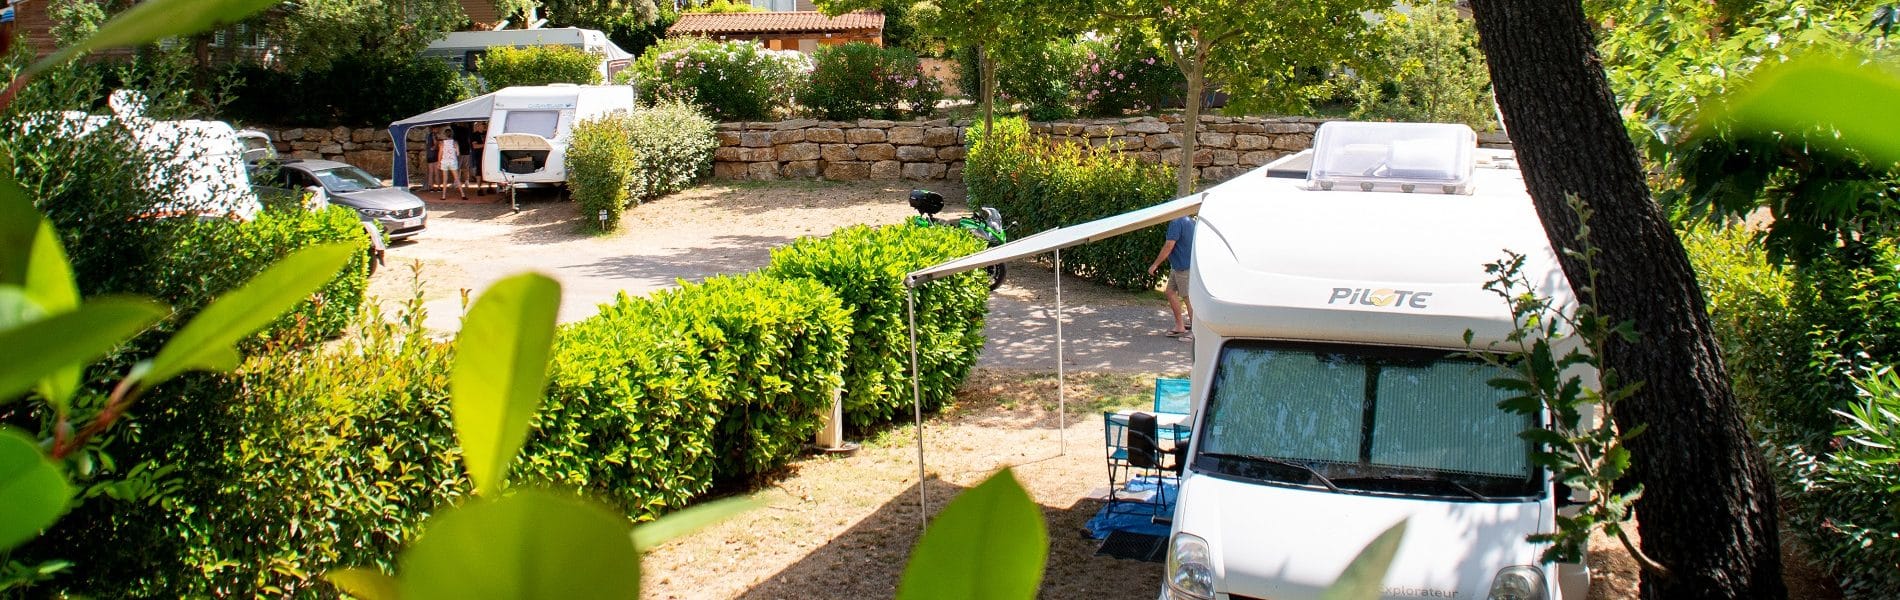 Campasun : Camping Avec Emplacement Tente Camping Car Sanary Toulon Var 1900x600